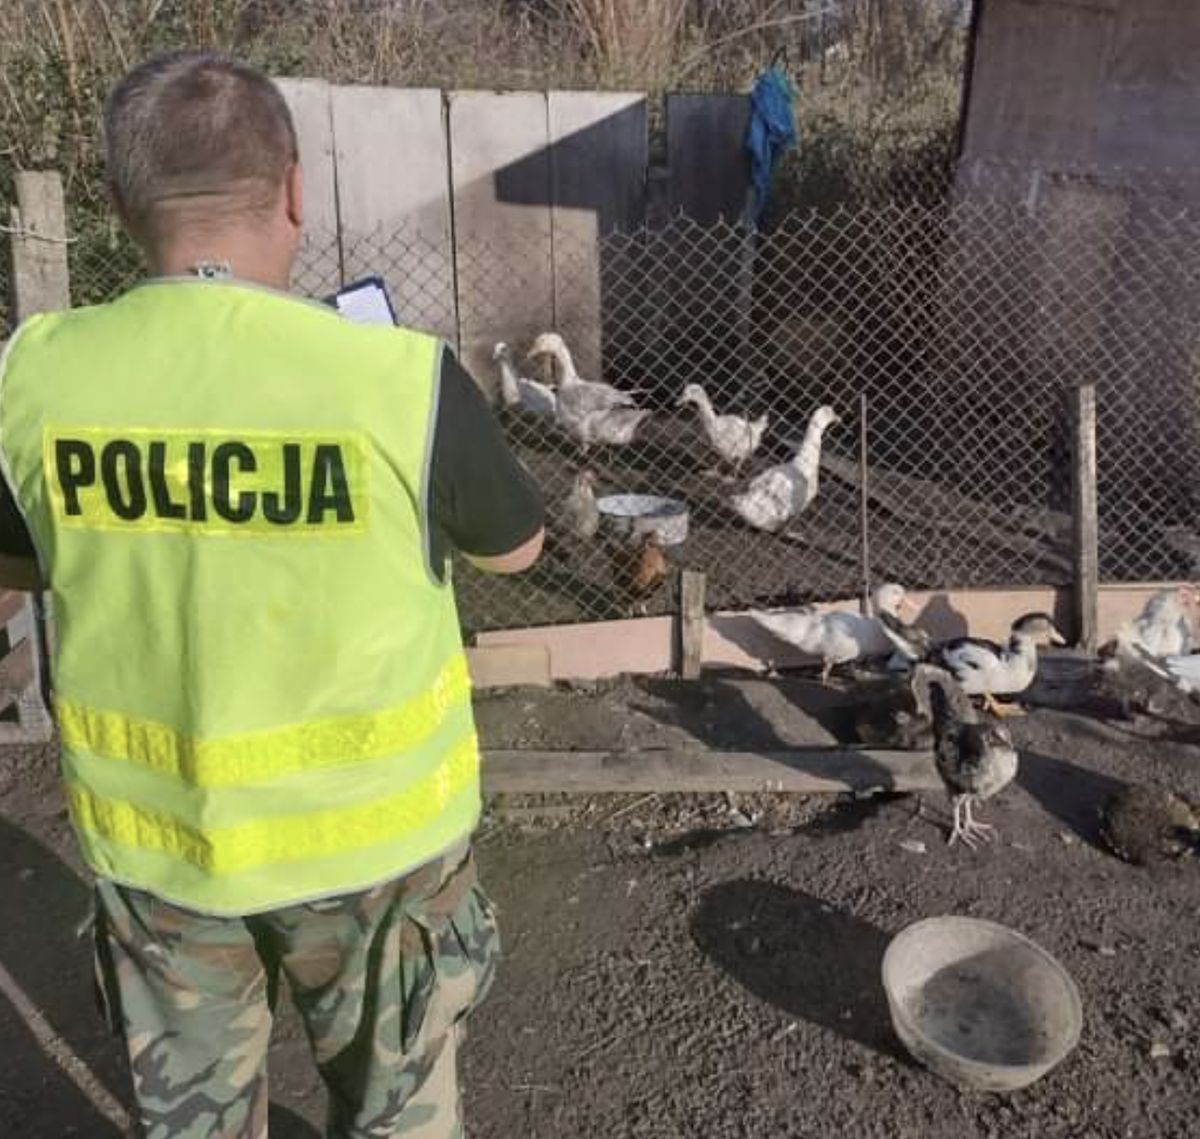 Kilkanaście kaczek zostało nocą skradzionych z gospodarstwa w Jaktorowie. Policjantom udało się odzyskać osiem z nich (Policja)